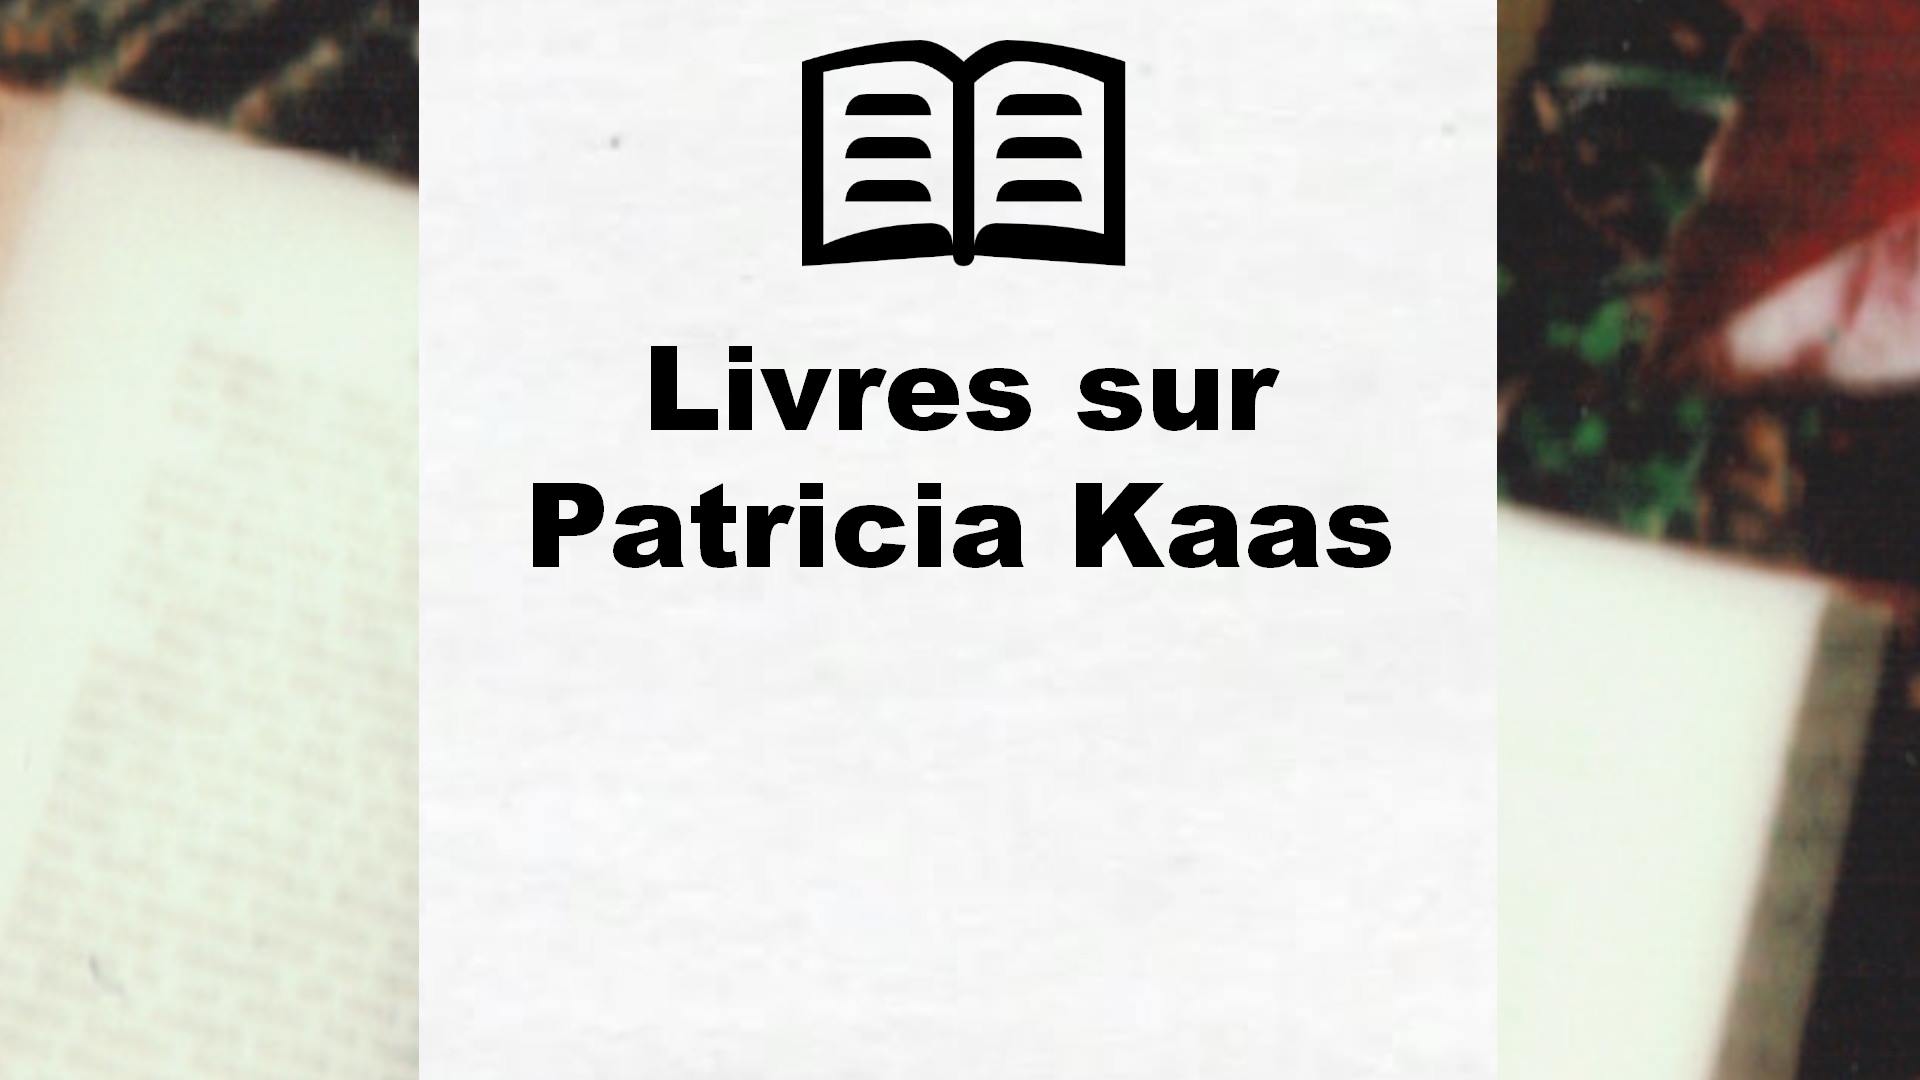 Livres sur Patricia Kaas